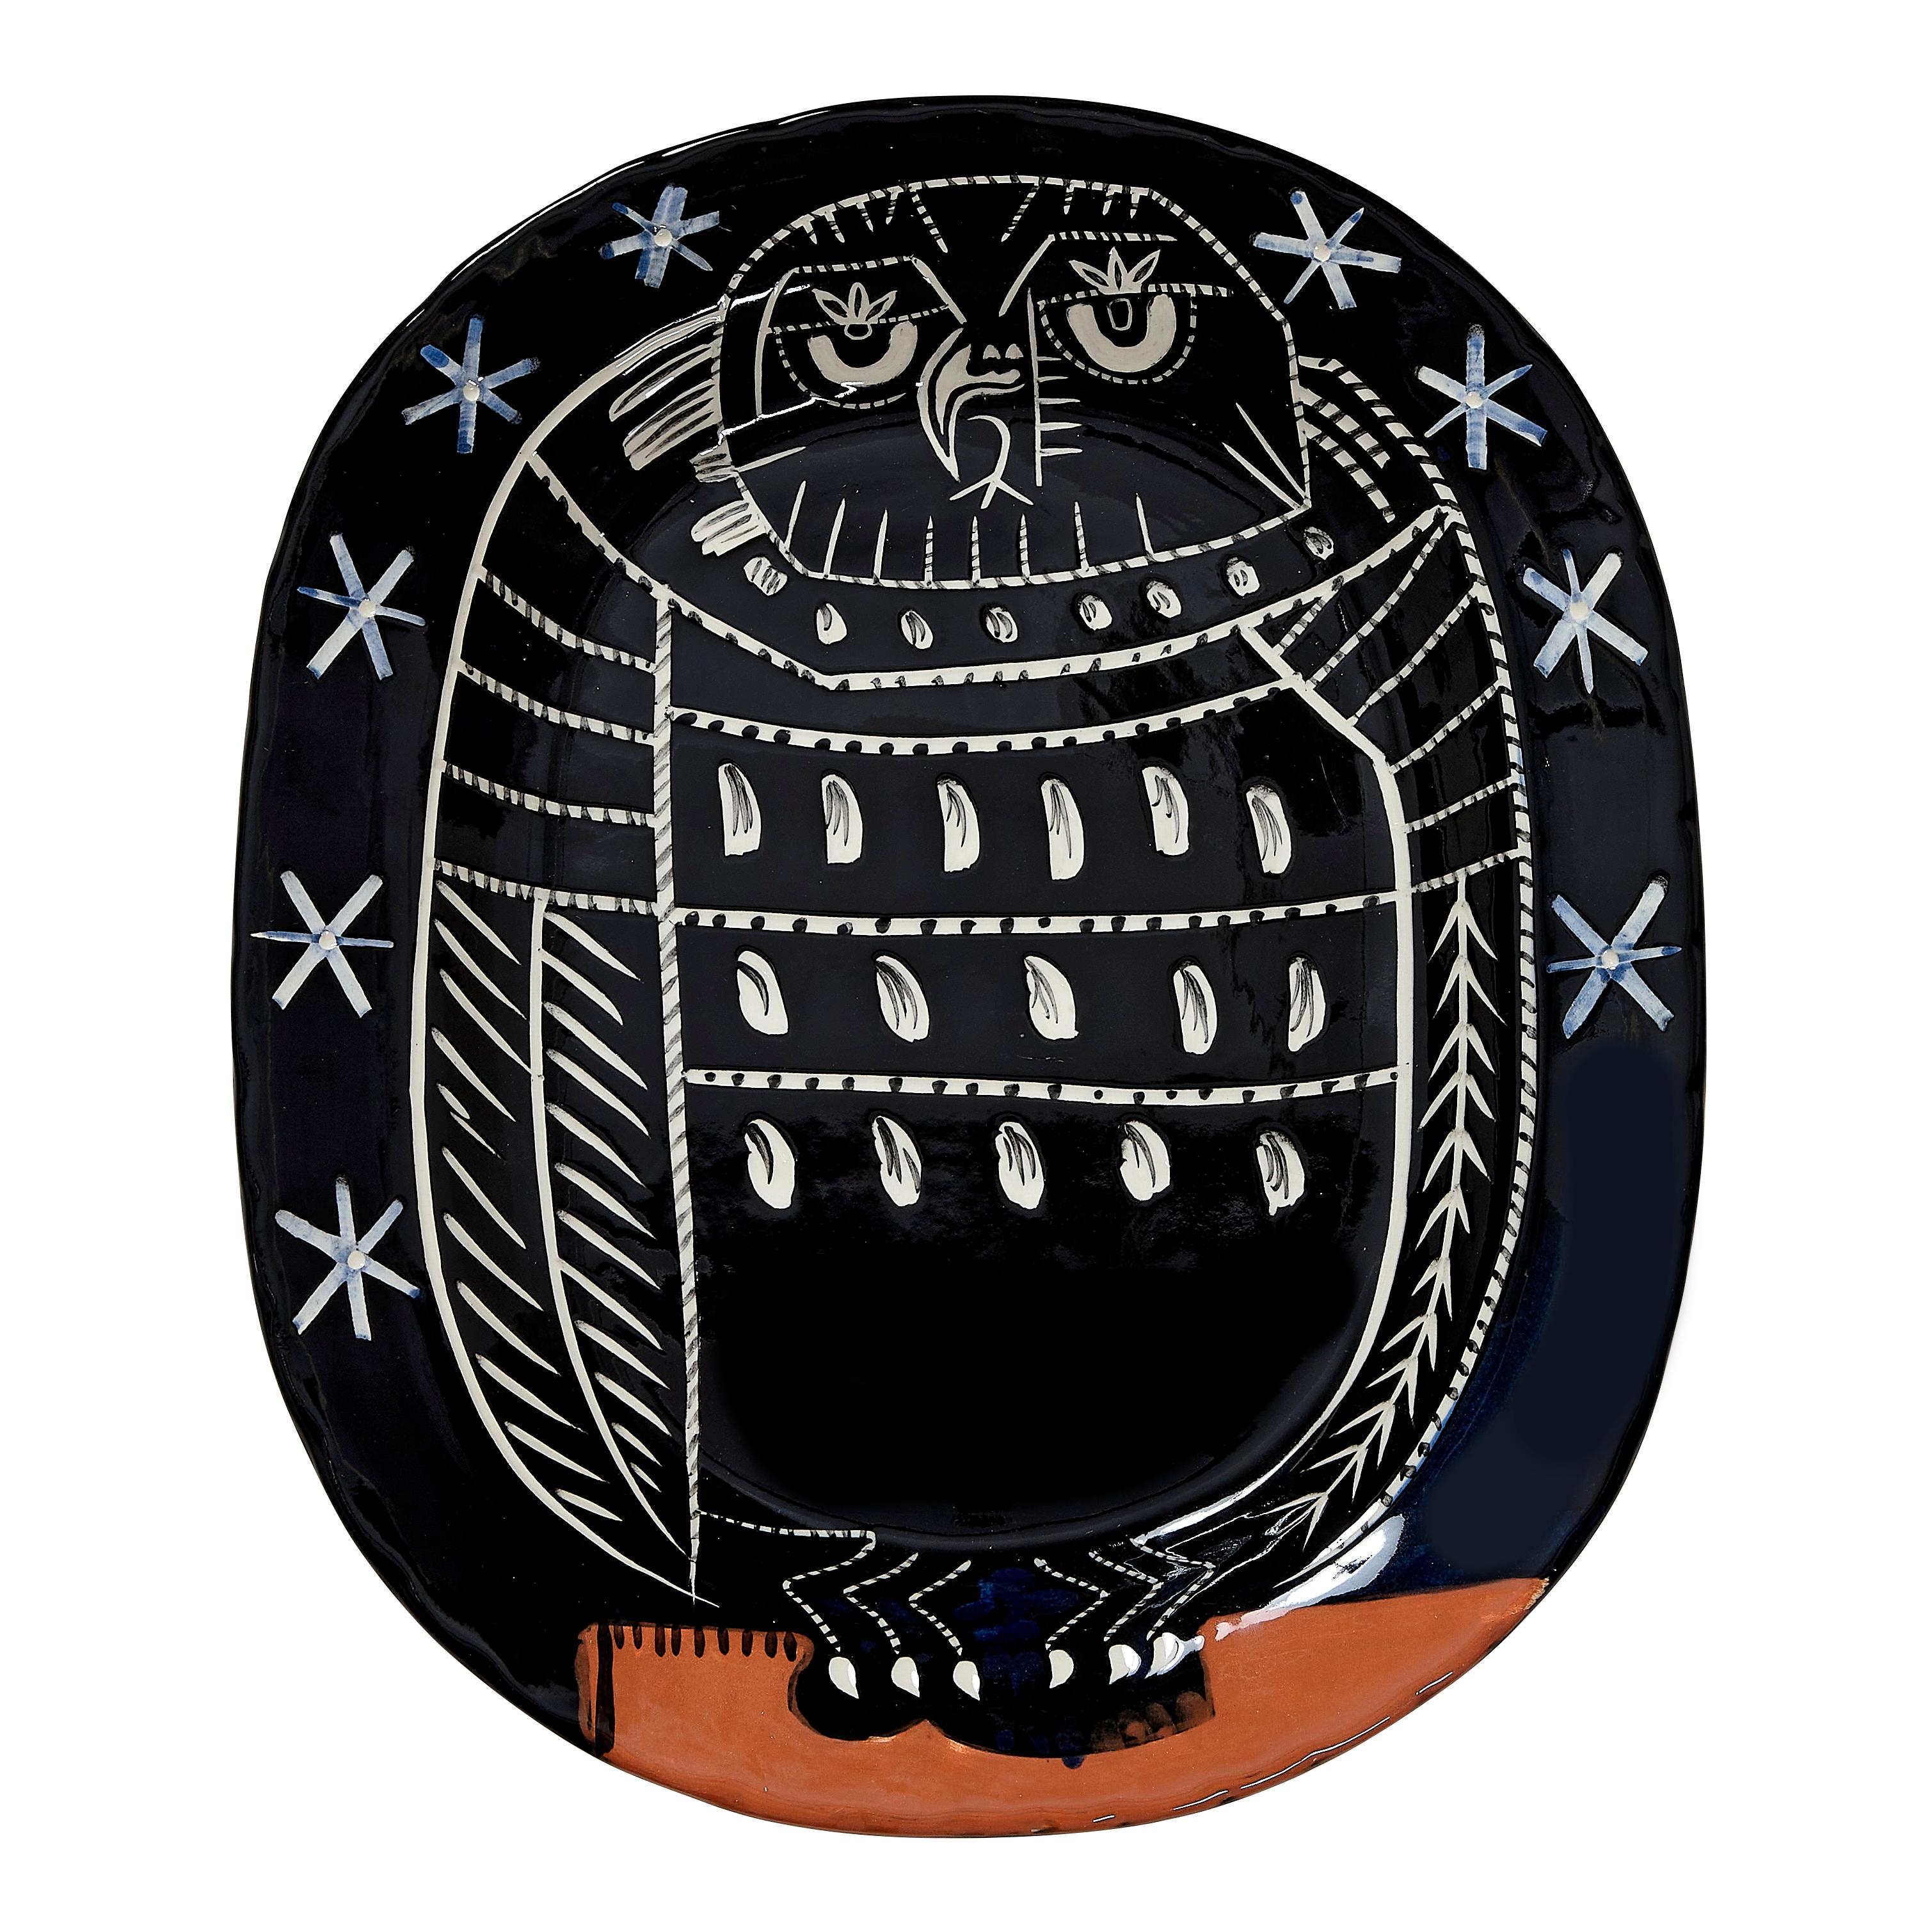 Pablo Picasso Madoura 'Hibou brillant' (A. R. 285) Owl Ceramic Plate 